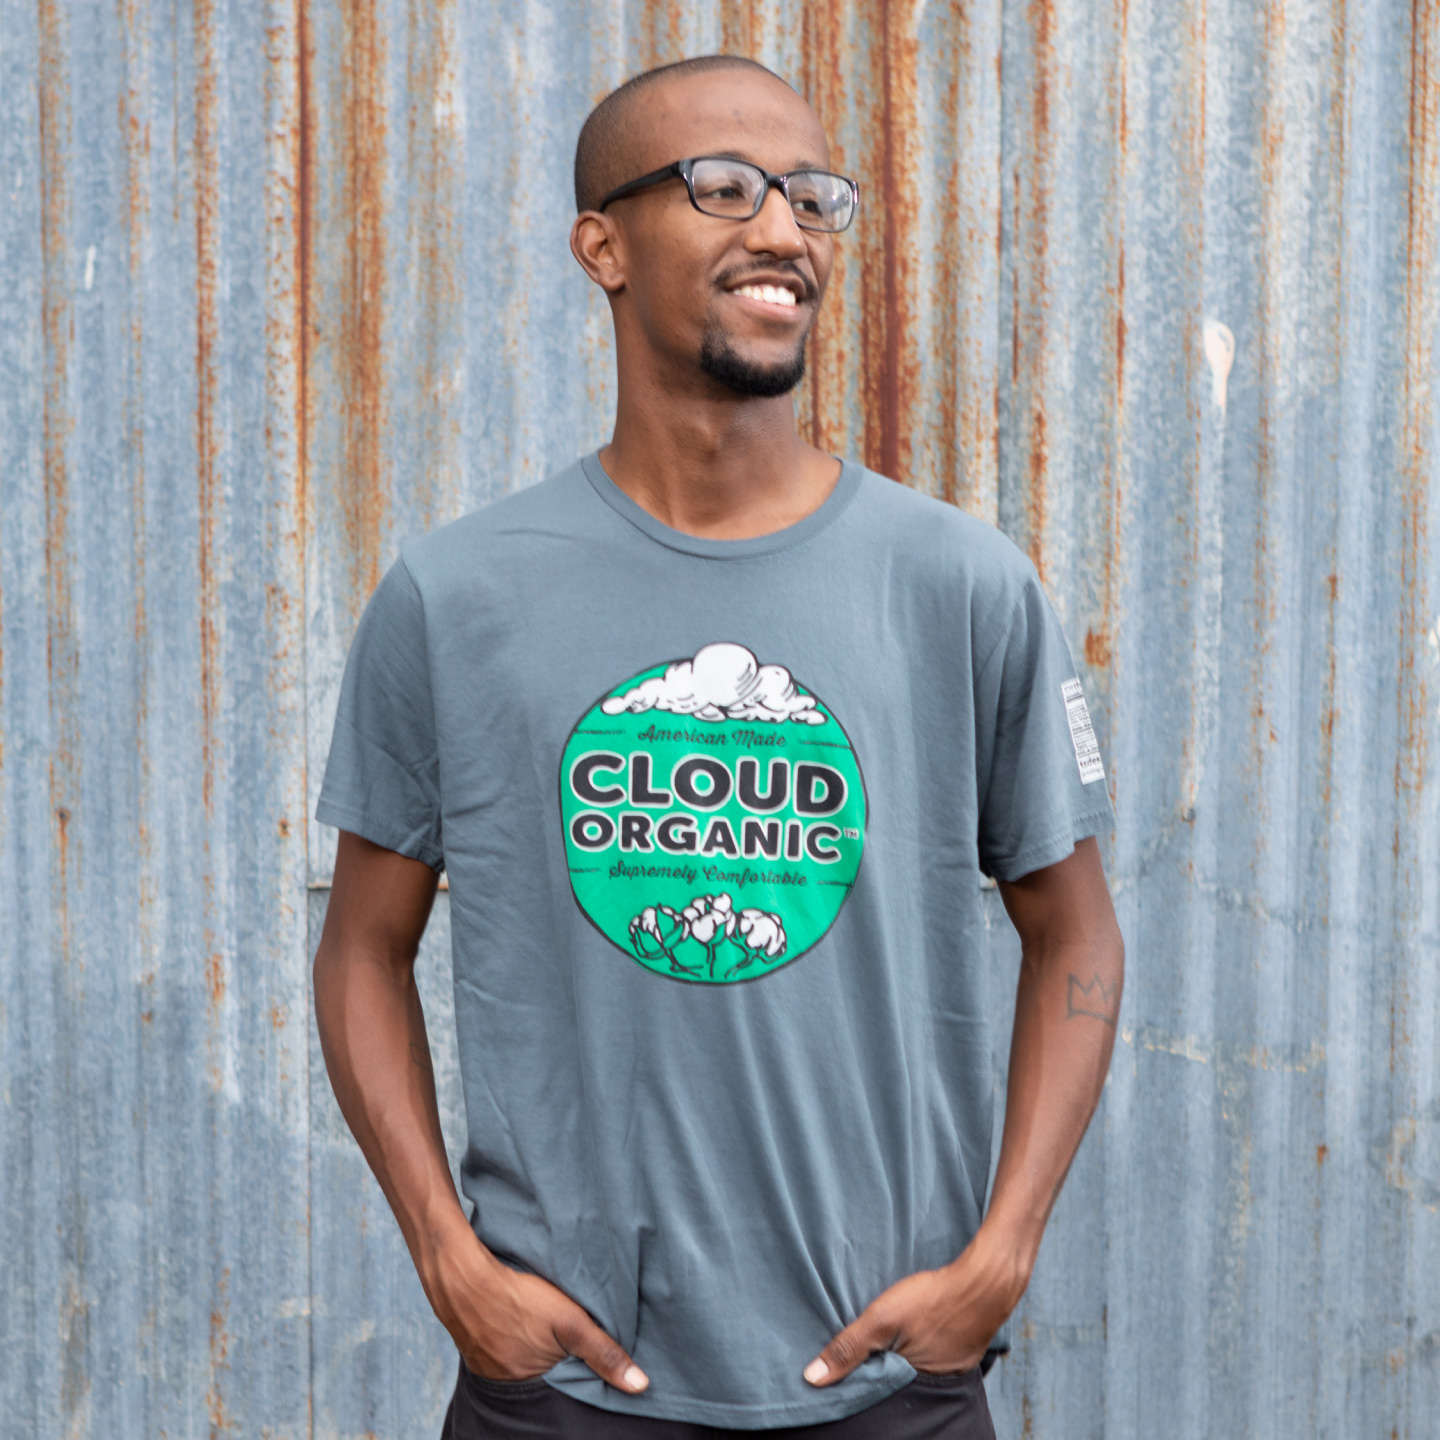 cloud - Cloud - T-Shirt